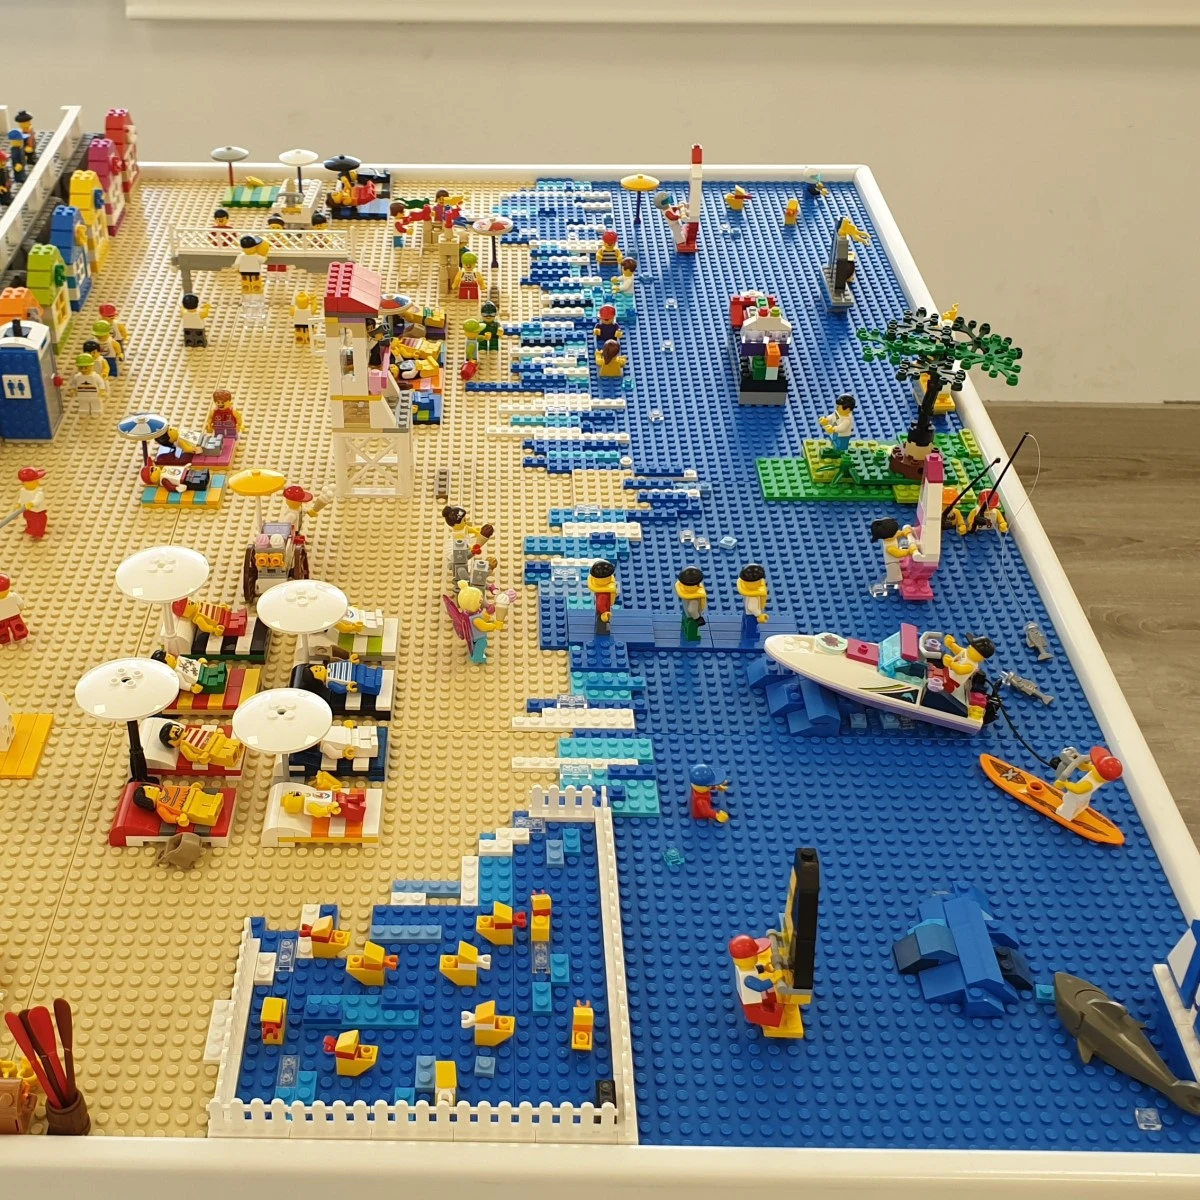 Diversión en nuestro LEGOCAMP, el campamento urbano de vereano en caceres de LEGO y piscina